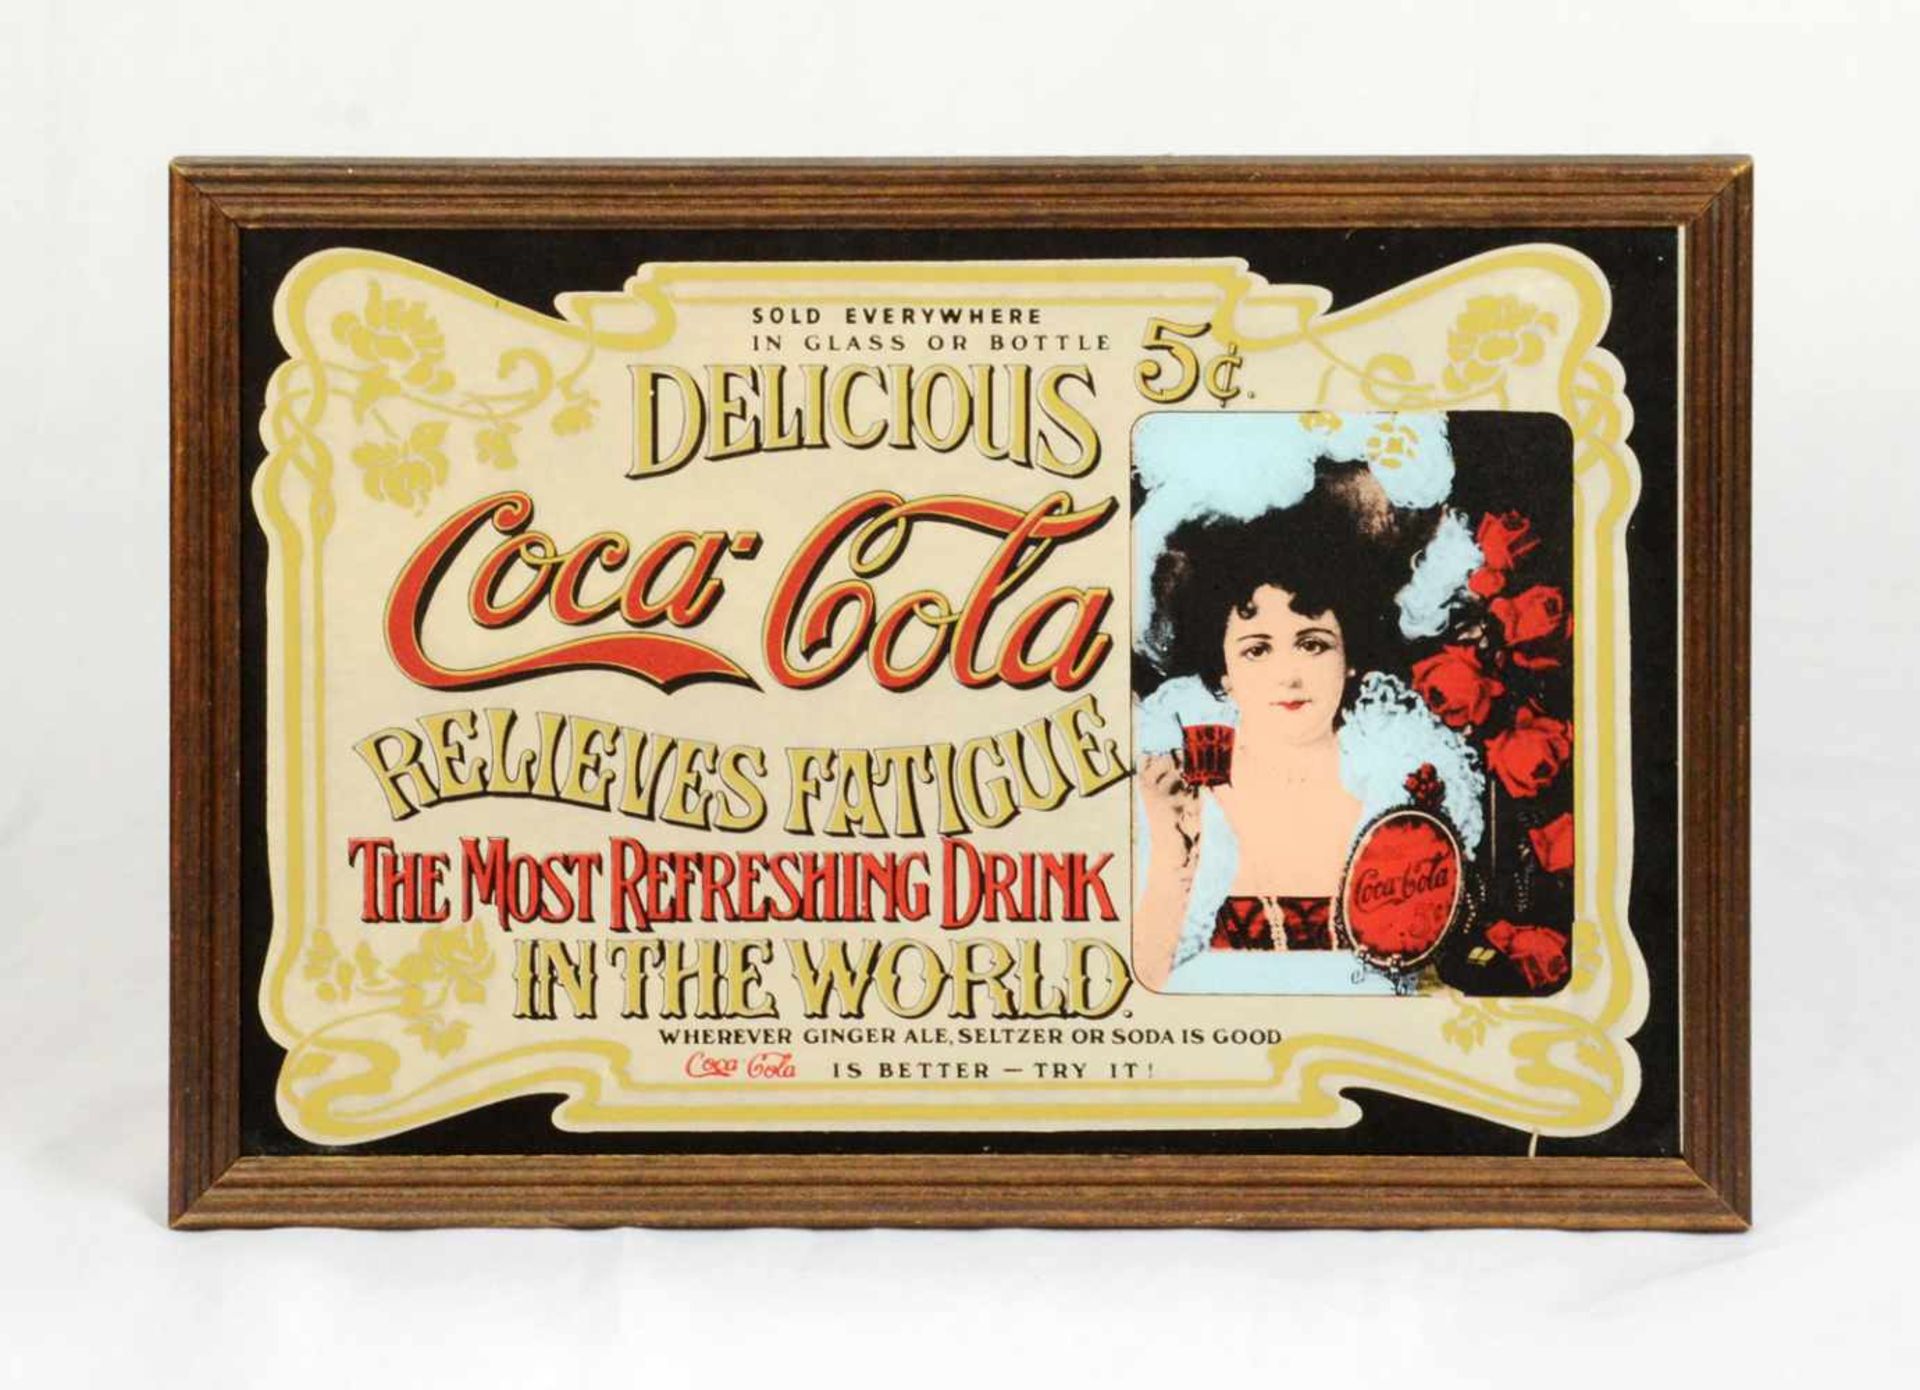 Advertisement on mirror "Delicious Coca-Cola"Advertisement printed on mirror - "Delicious Coca-Cola,